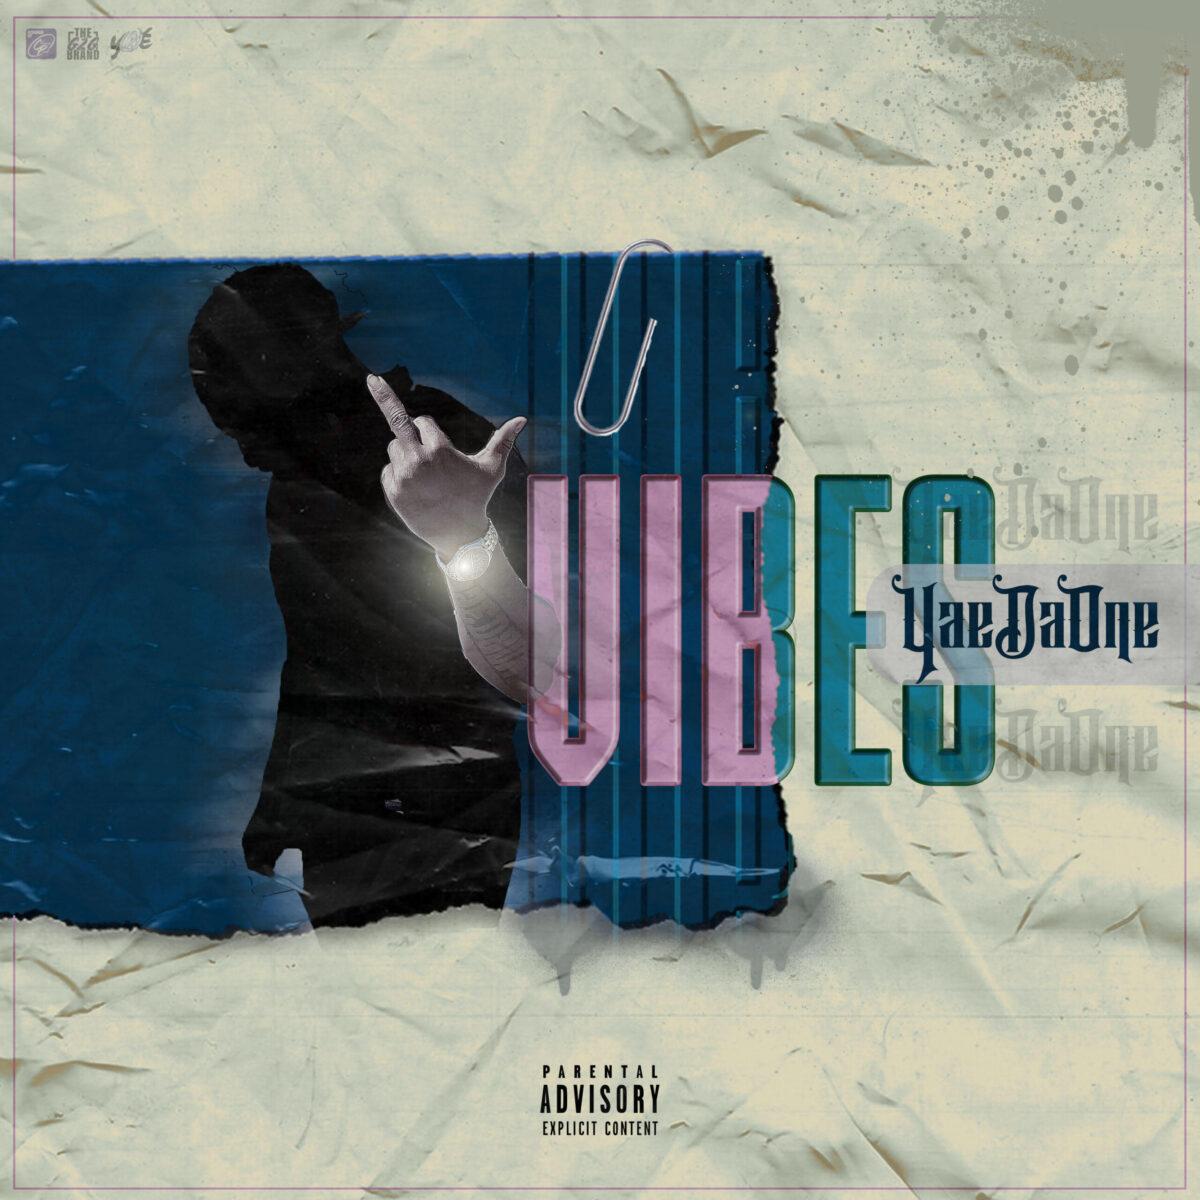 YaeDaOne Releases New EP "Vibes": Listen